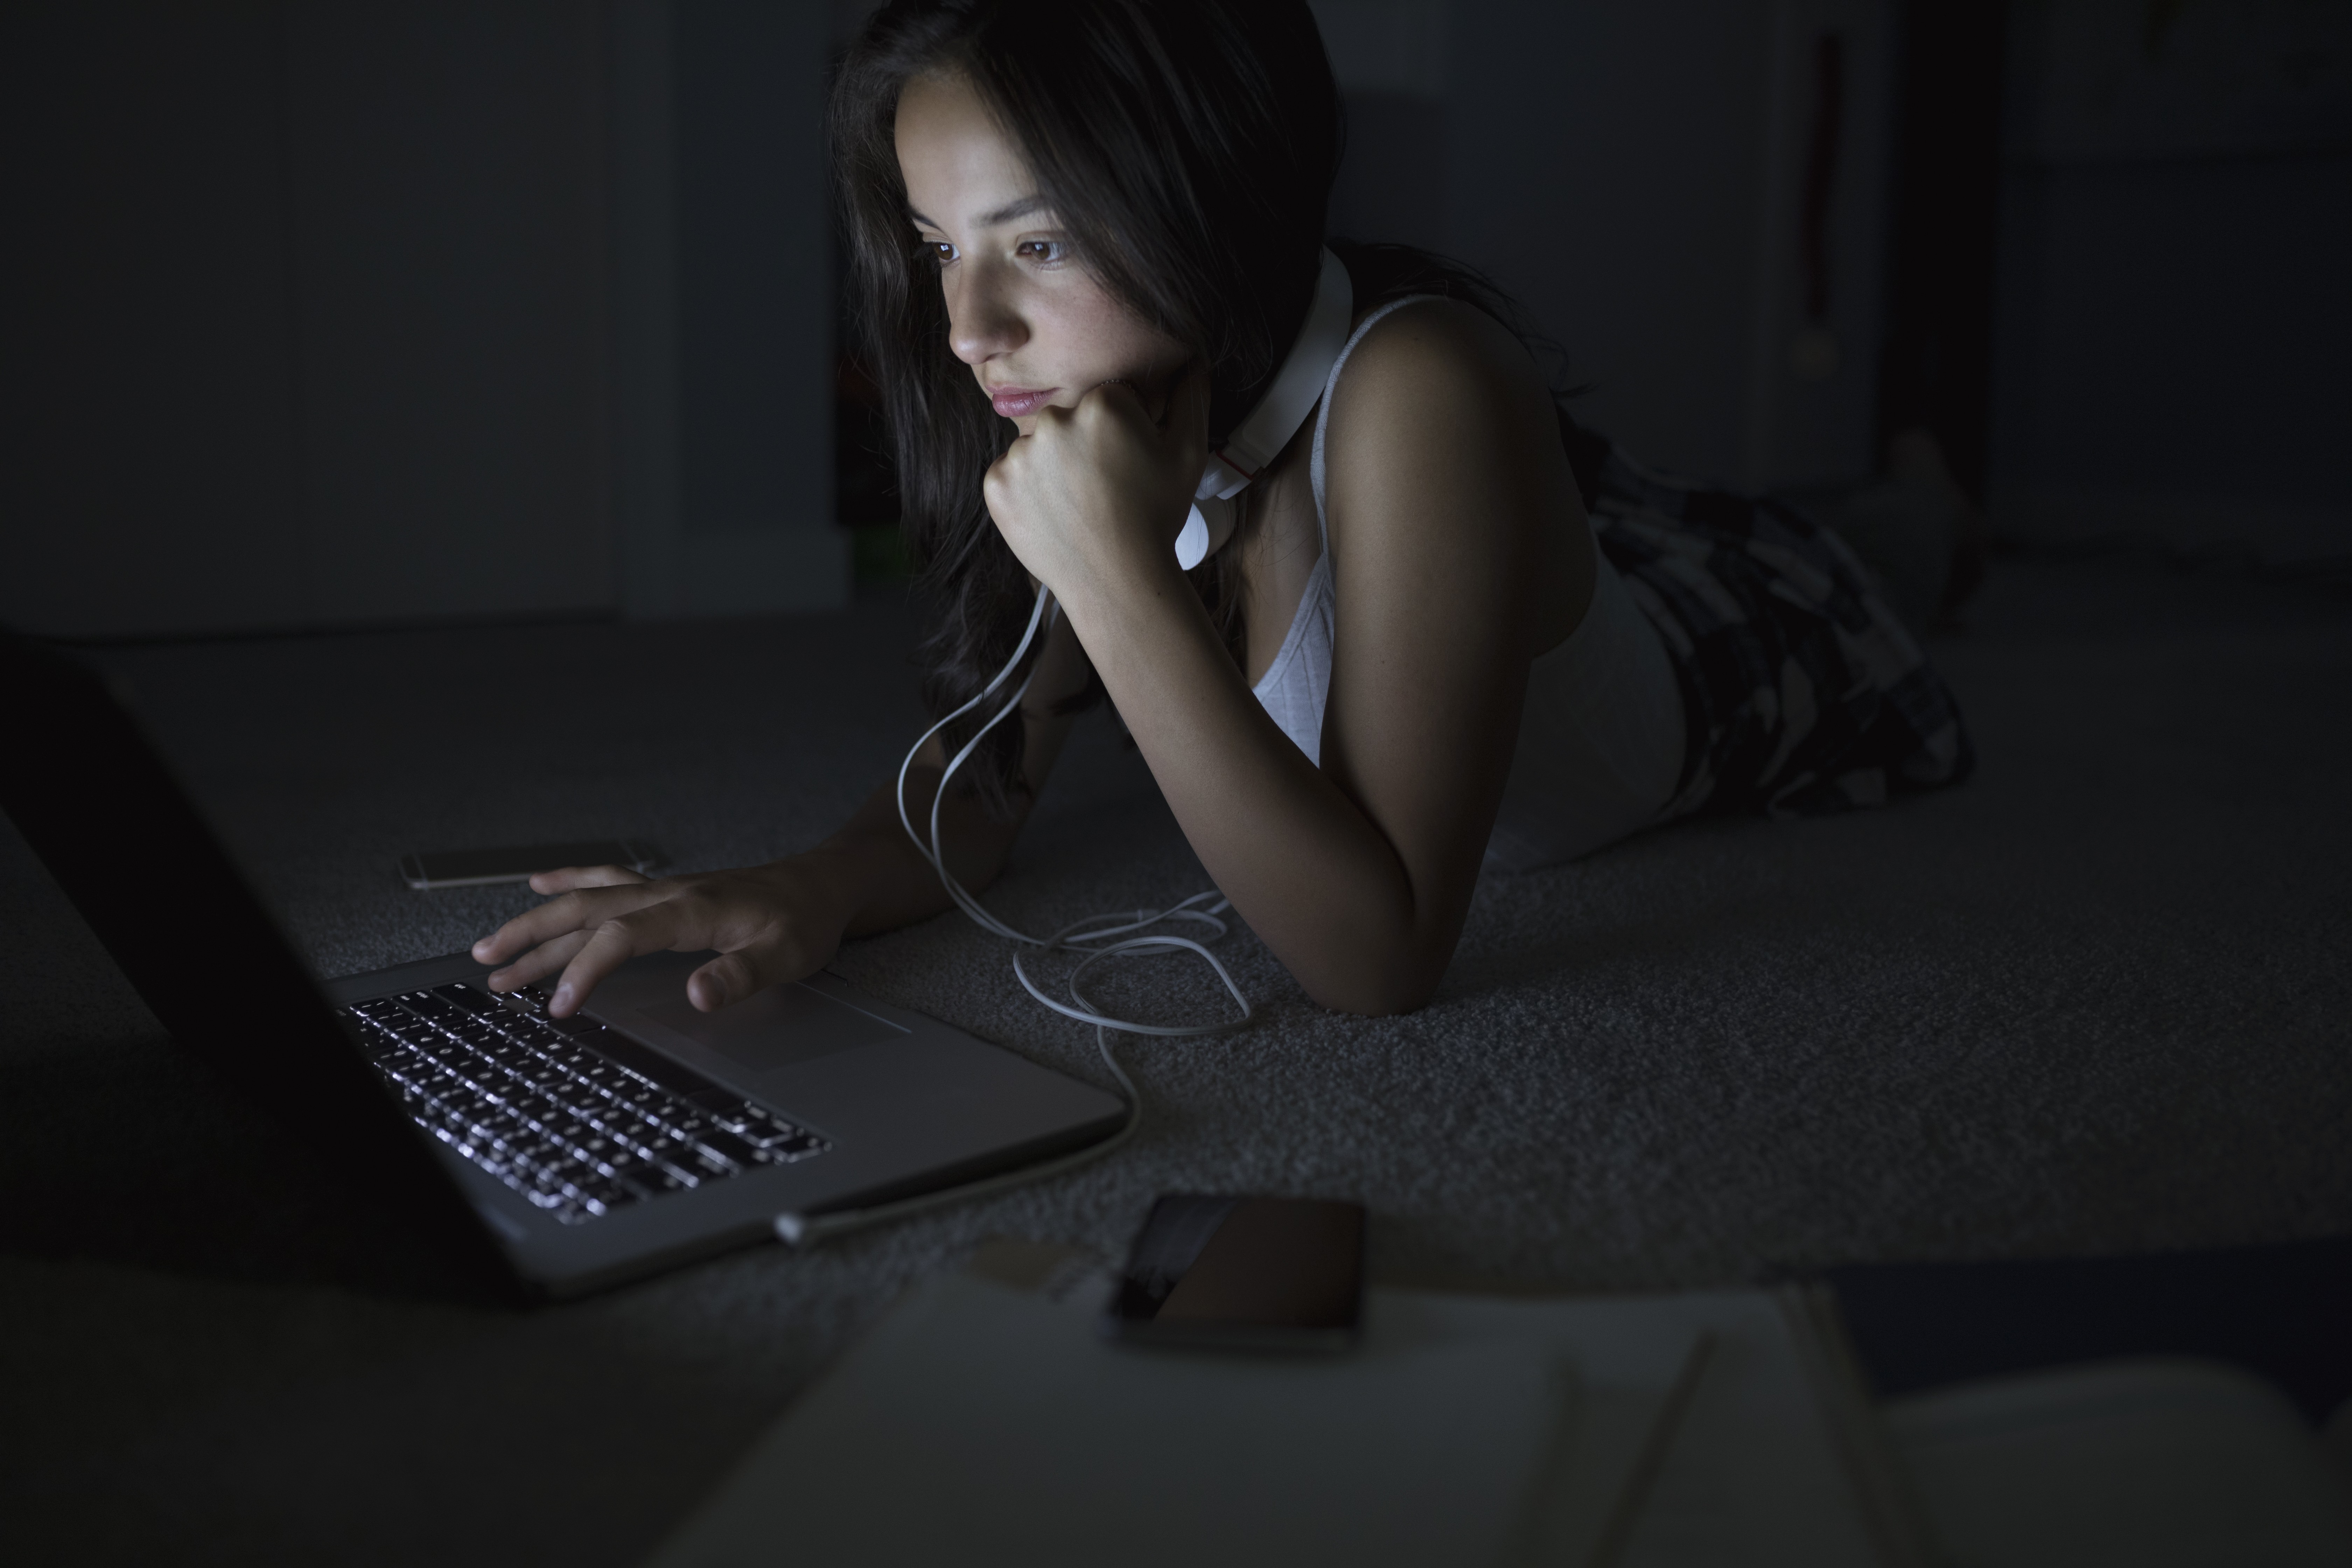 Filhos usando a internet é algo inevitável - mas é possível protegê-los dos males do mundo virtual (Foto: Getty Images/ Hero Images)